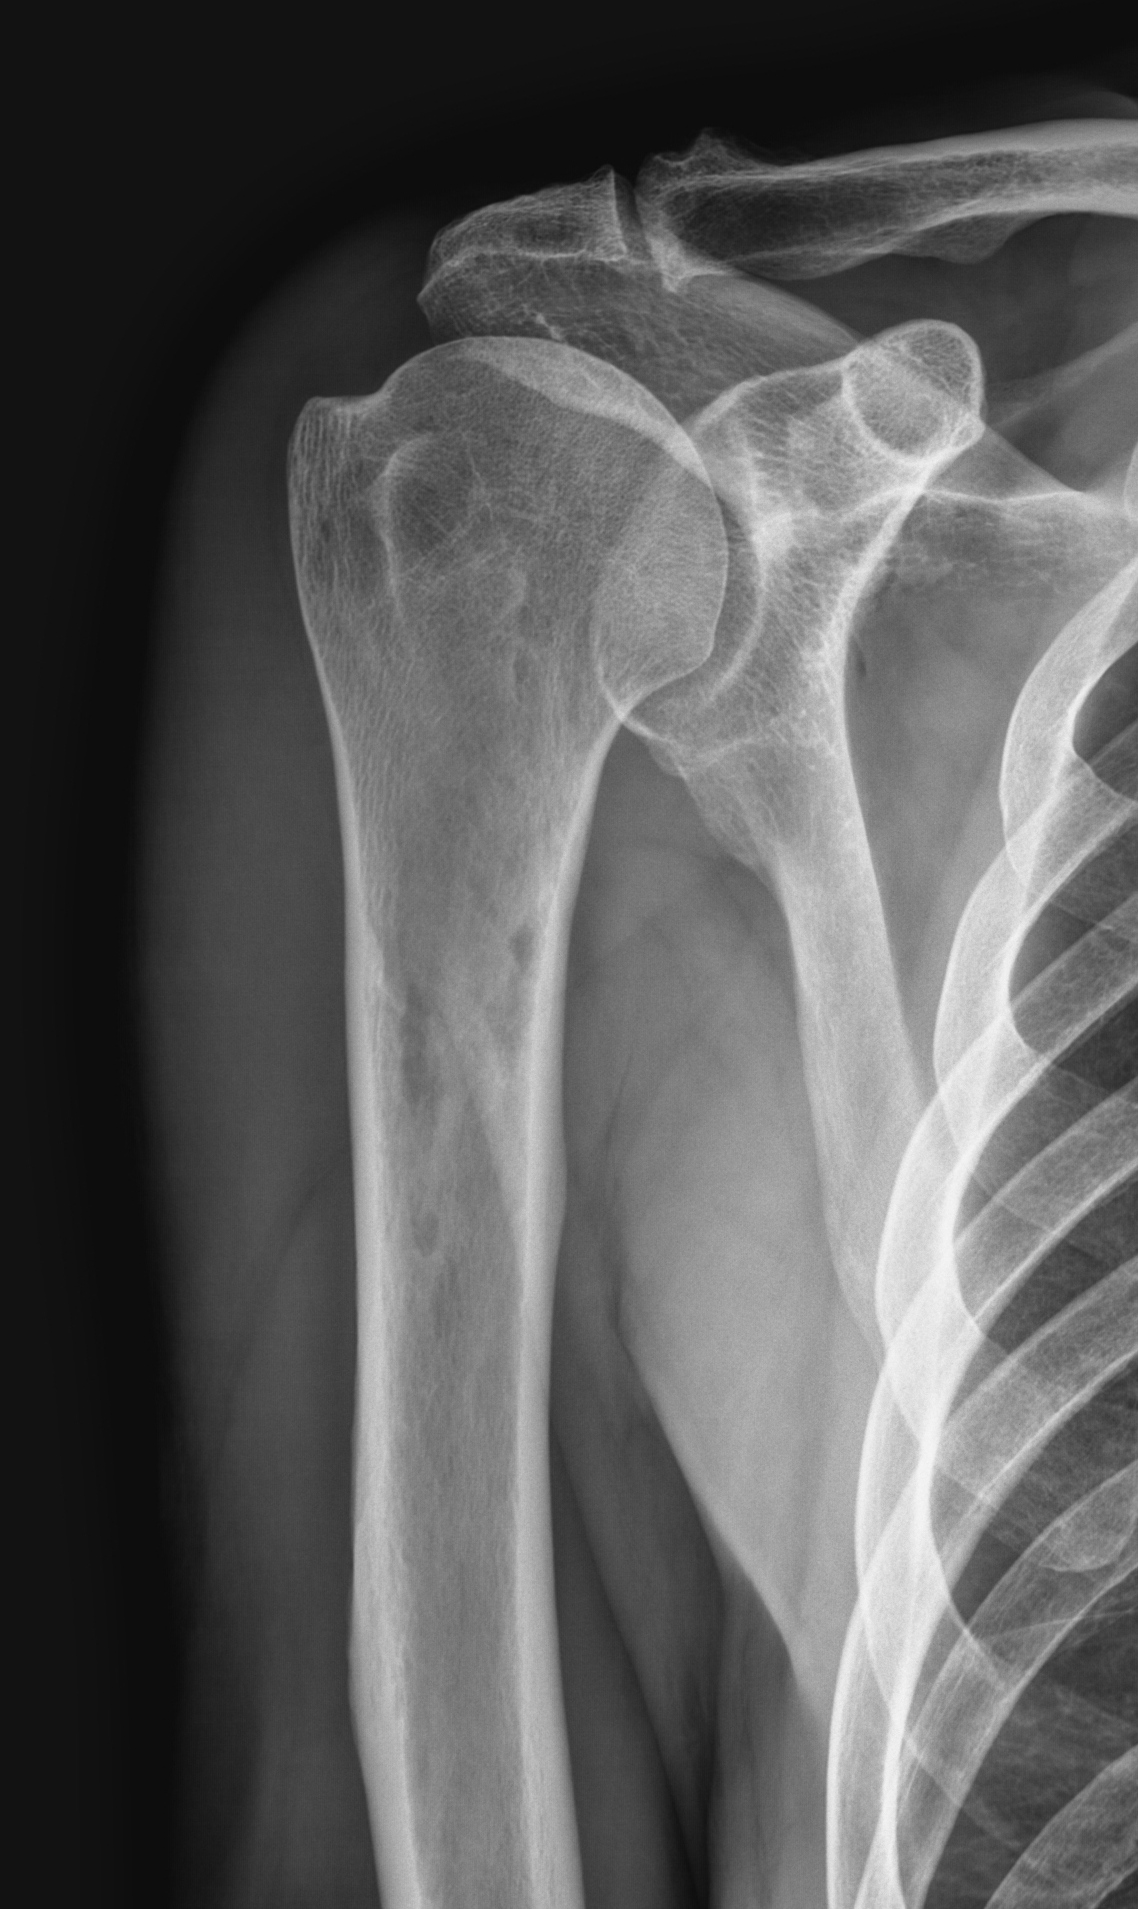 плечевая кость фото анатомия